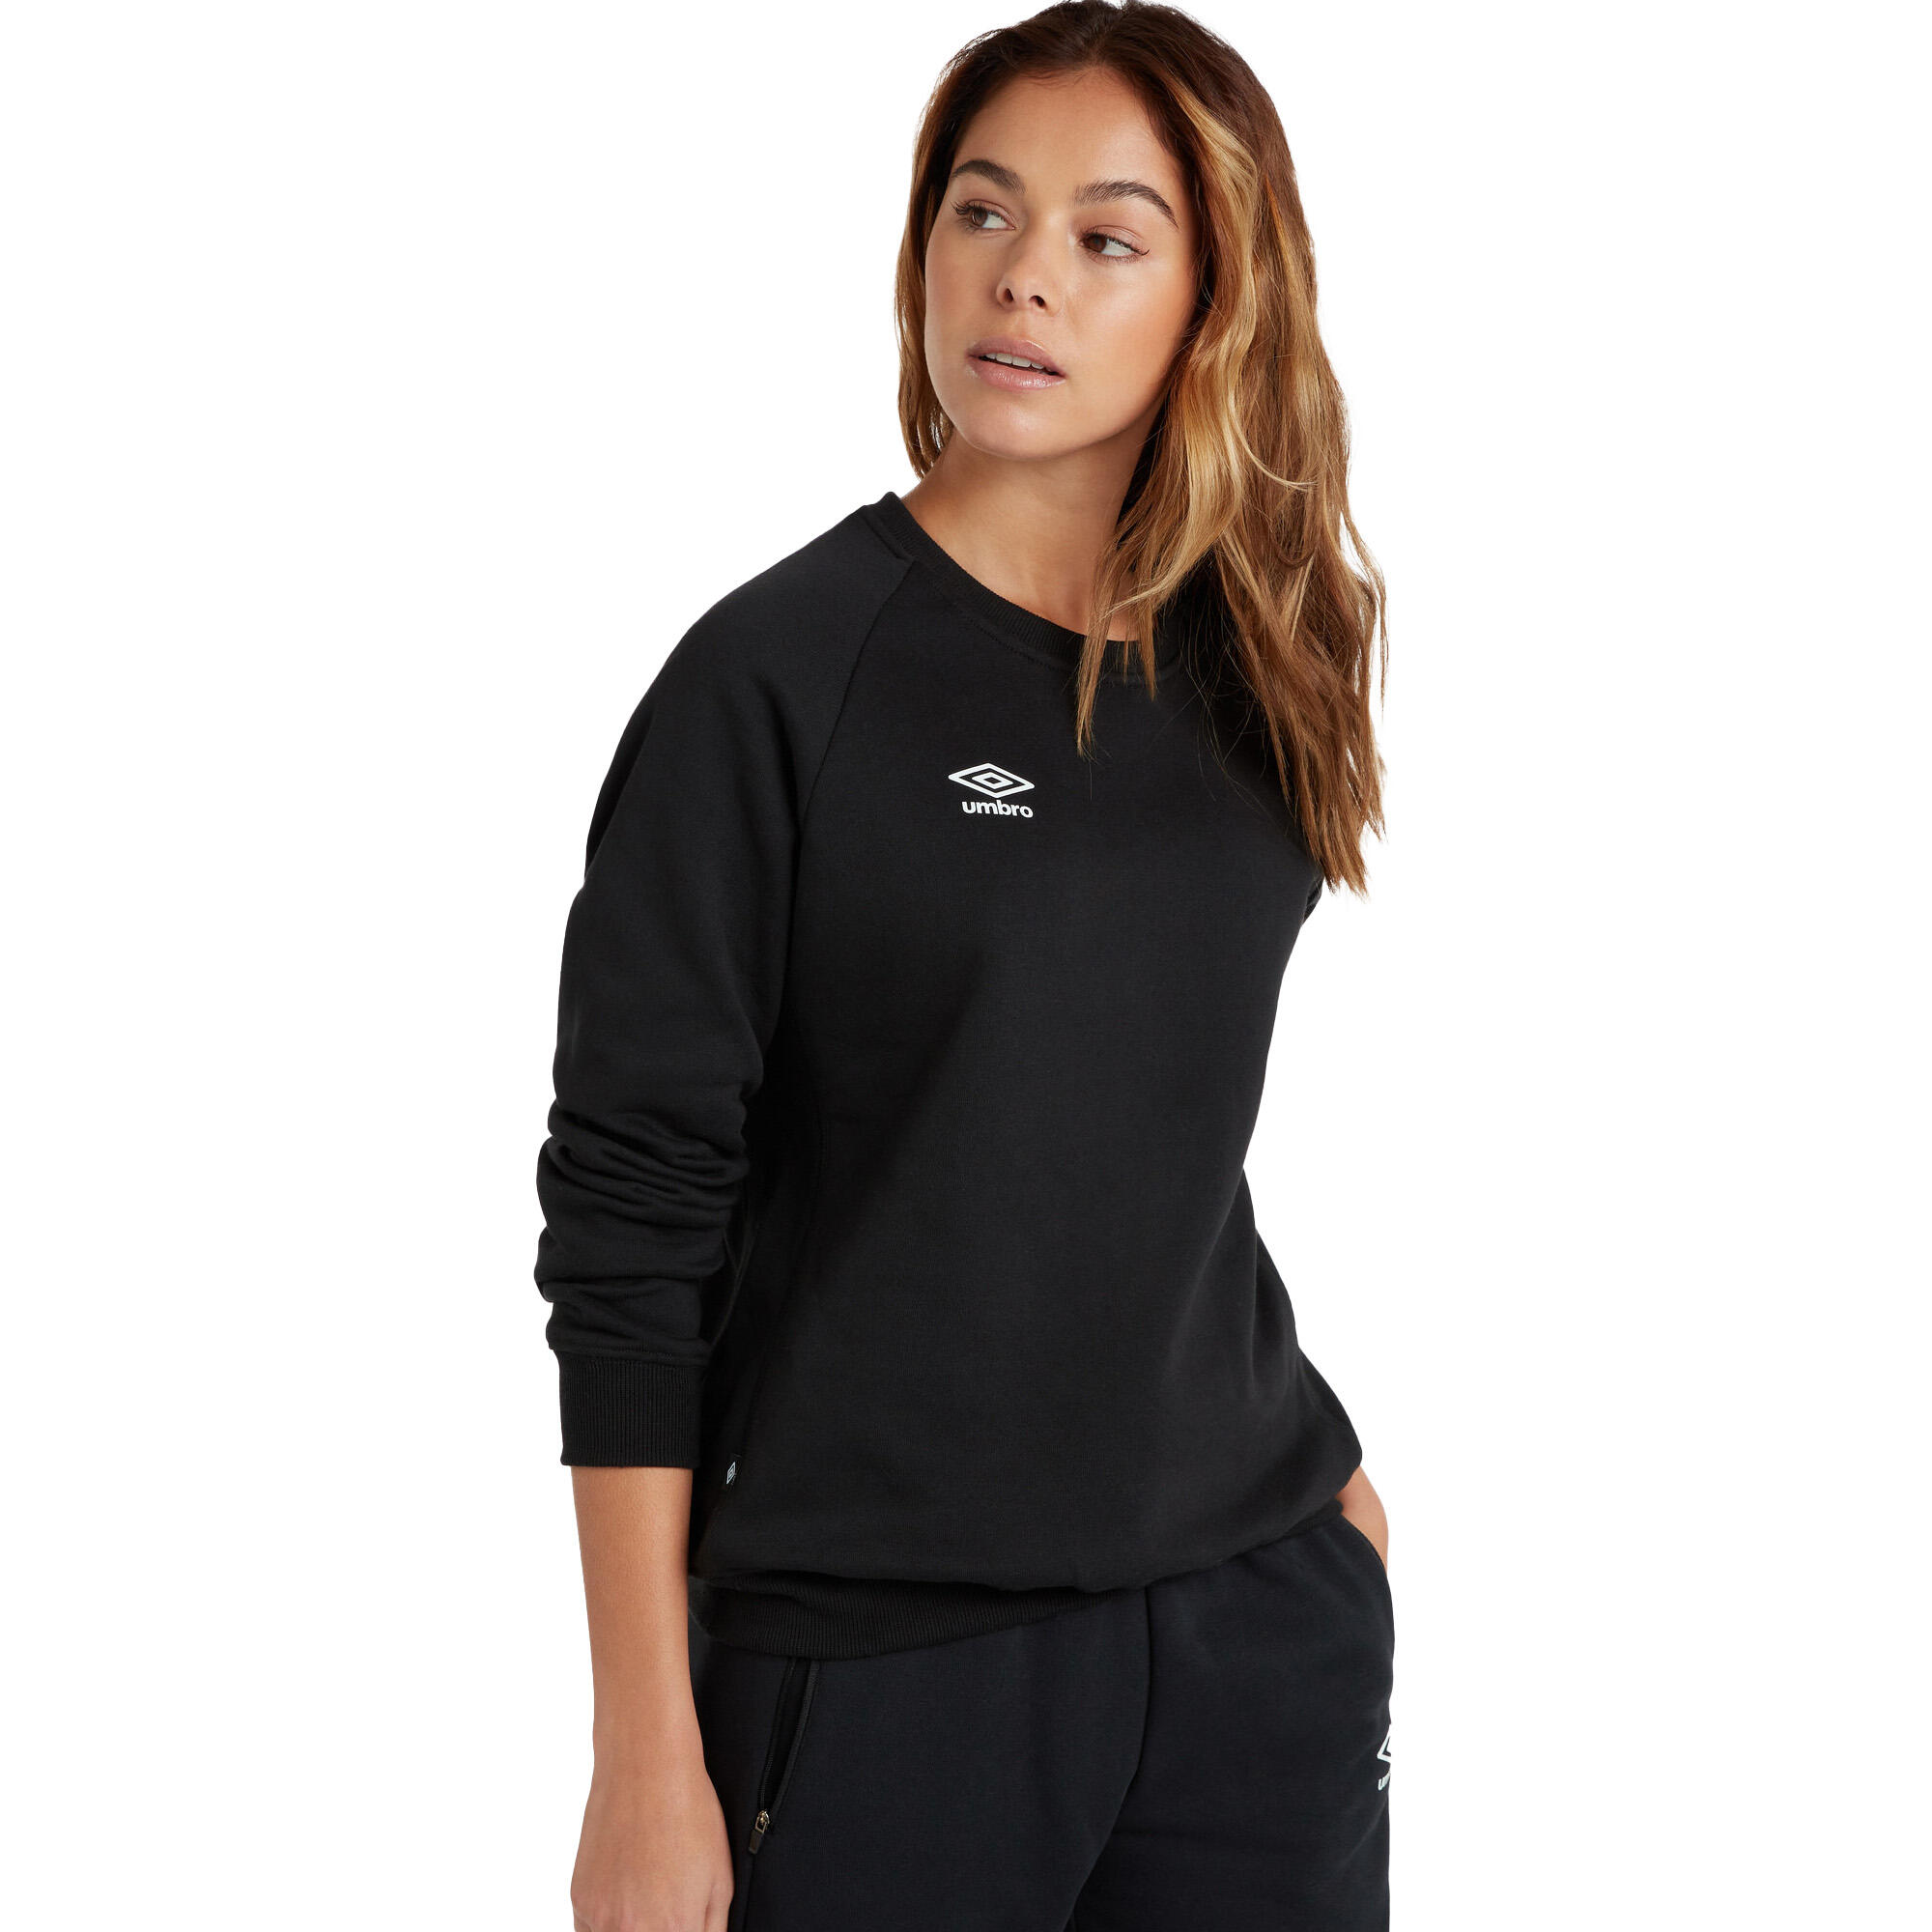 Womens/Ladies Club Leisure Sweatshirt (Black/White) 2/4